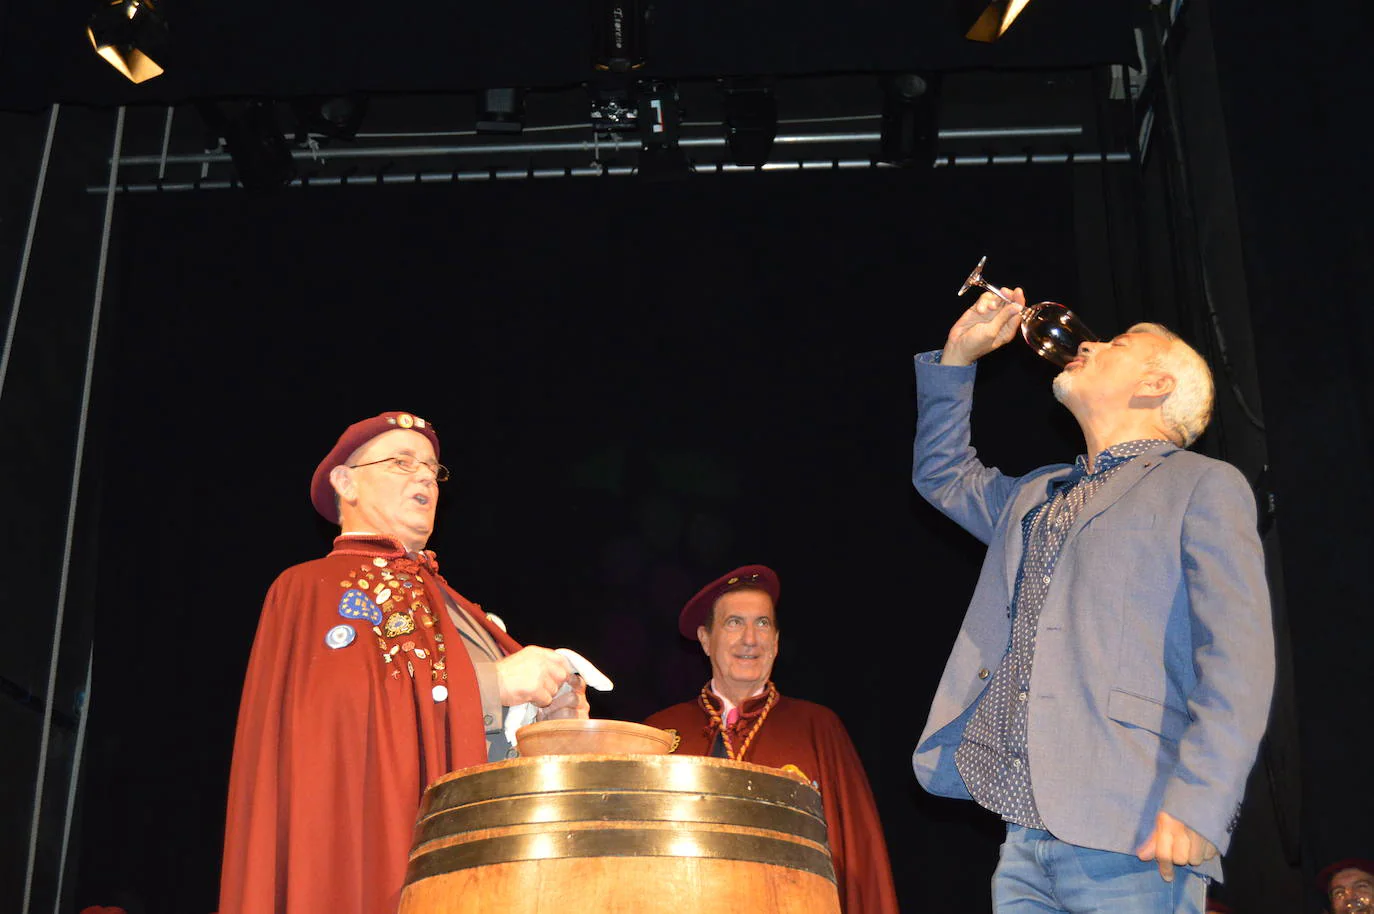 Los televisivos Carlos Sobera y Sonia Fidalgo han cumplido con el ritual de beber el vino y besar el cachu para ser distinguidos como Cofrades de Honor del Vino de Cangas. El Gran Capítulo de la Cofradía es uno de los actos centrales de la Fiesta de la Vendimia que se celebra cada año en Cangas del Narcea en torno a la fiesta del Pilar.